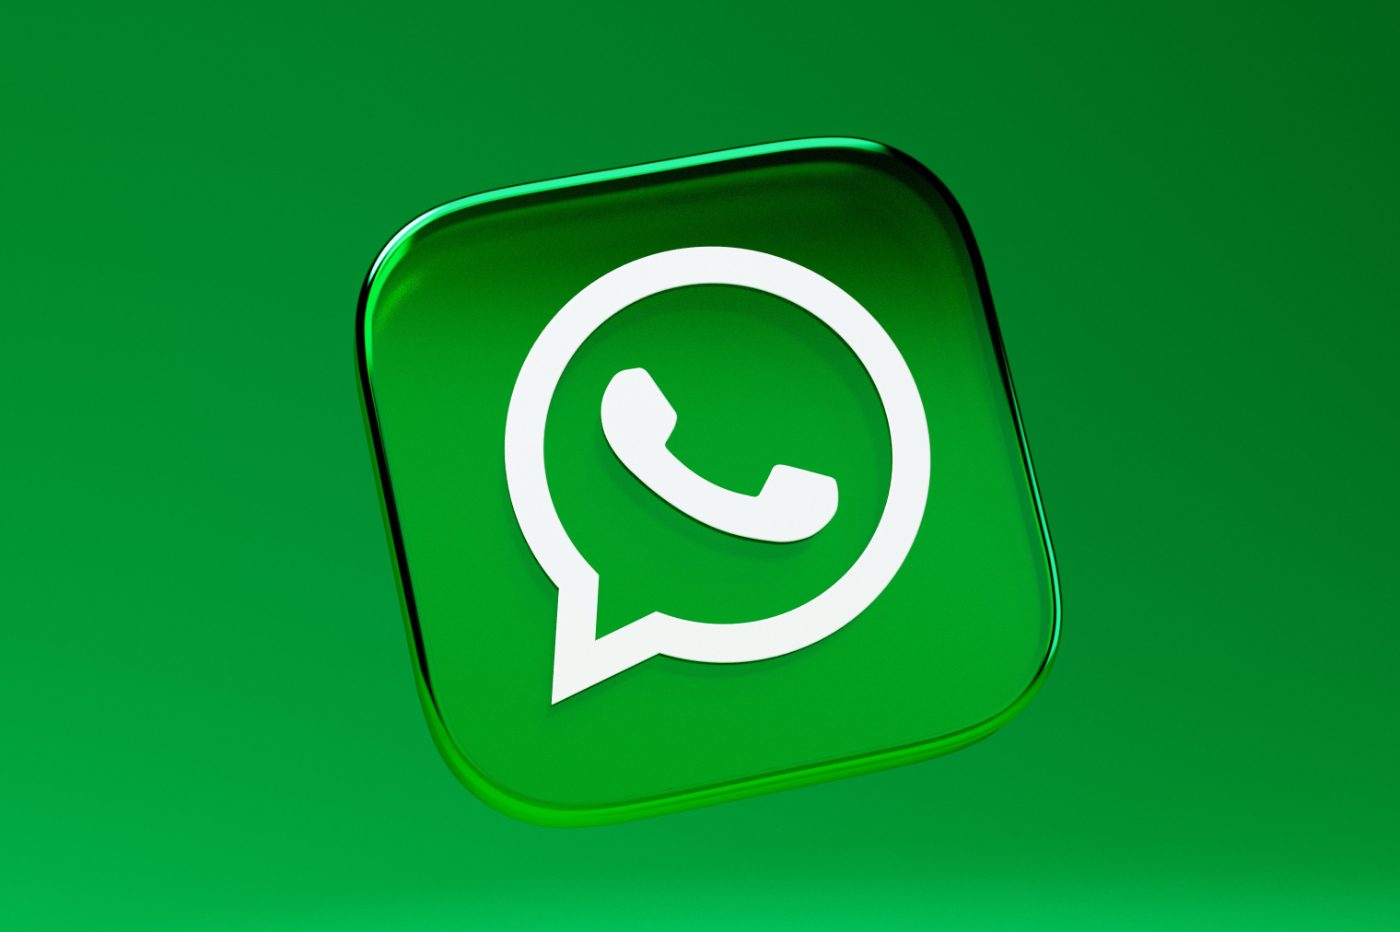 Se você fizer perguntas no WhatsApp, ele deverá responder em breve graças à inteligência artificial